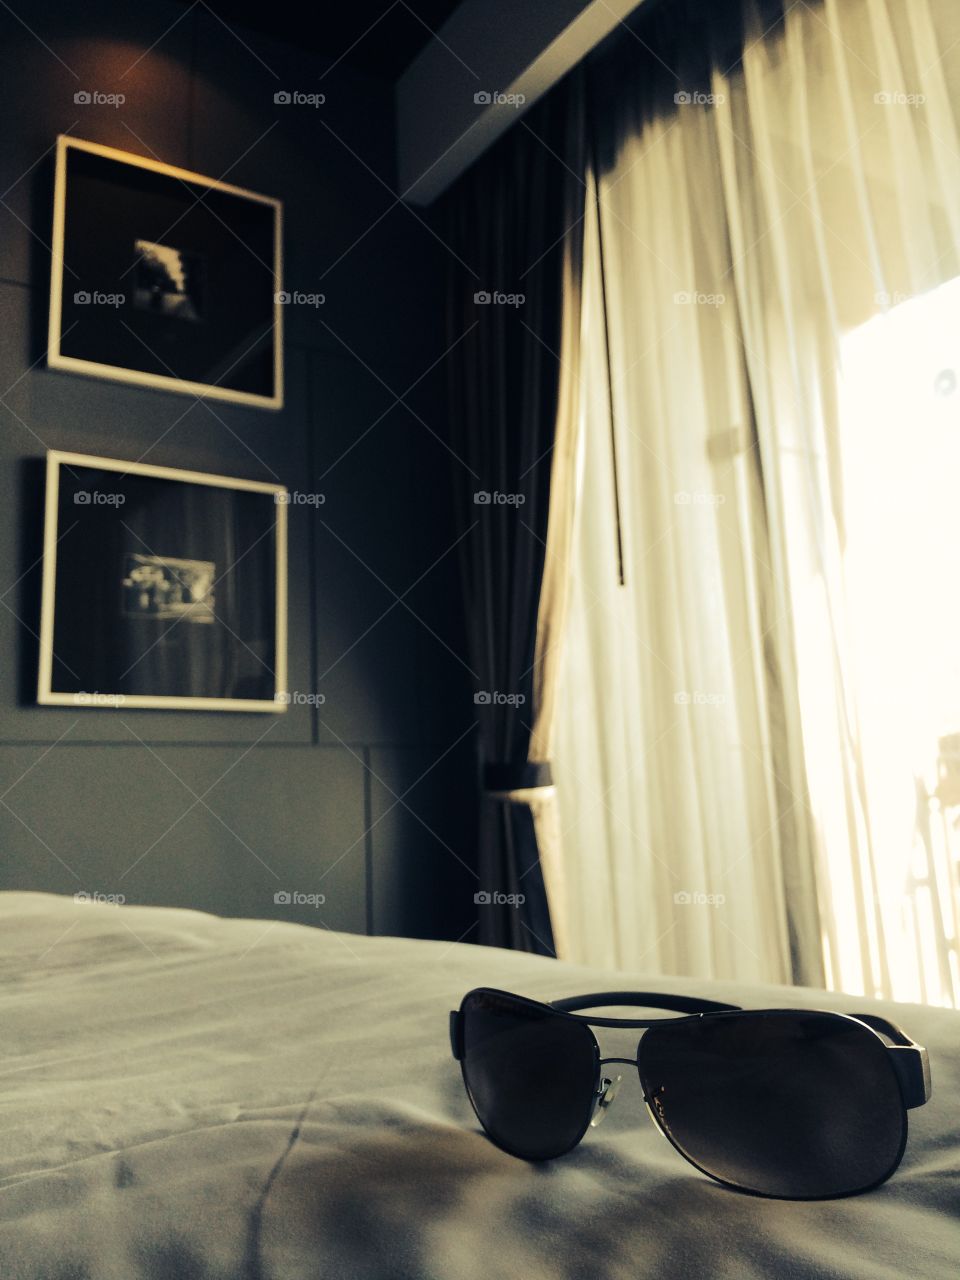 Sunglasses in bedroom